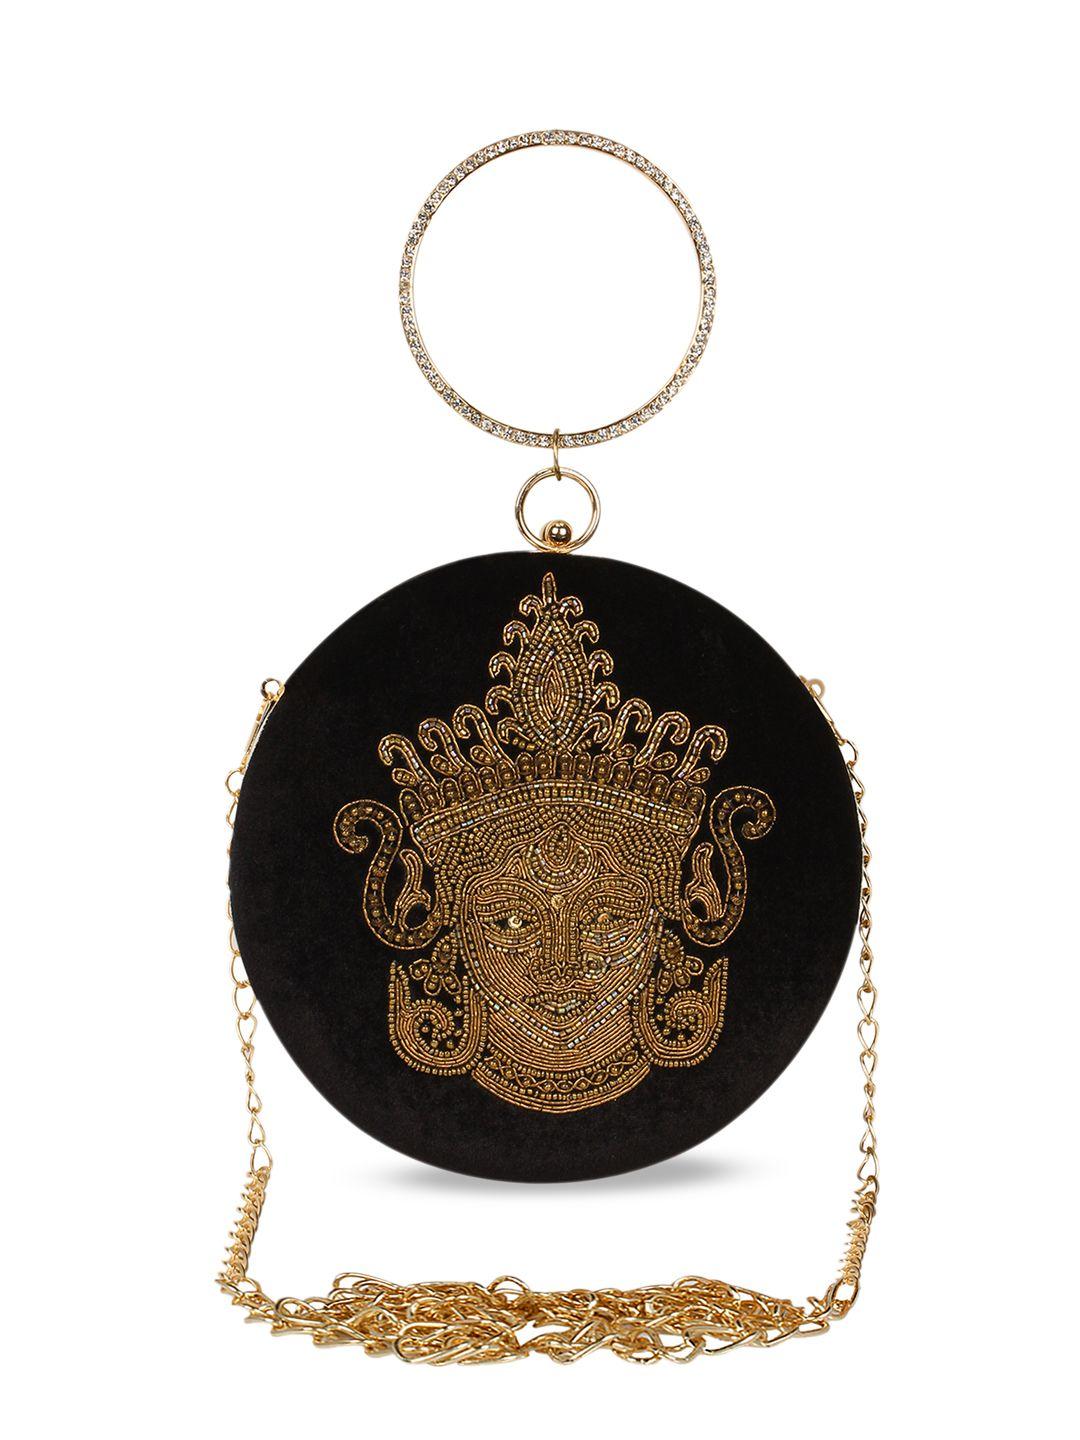 anekaant black & gold-toned embellished embellished clutch